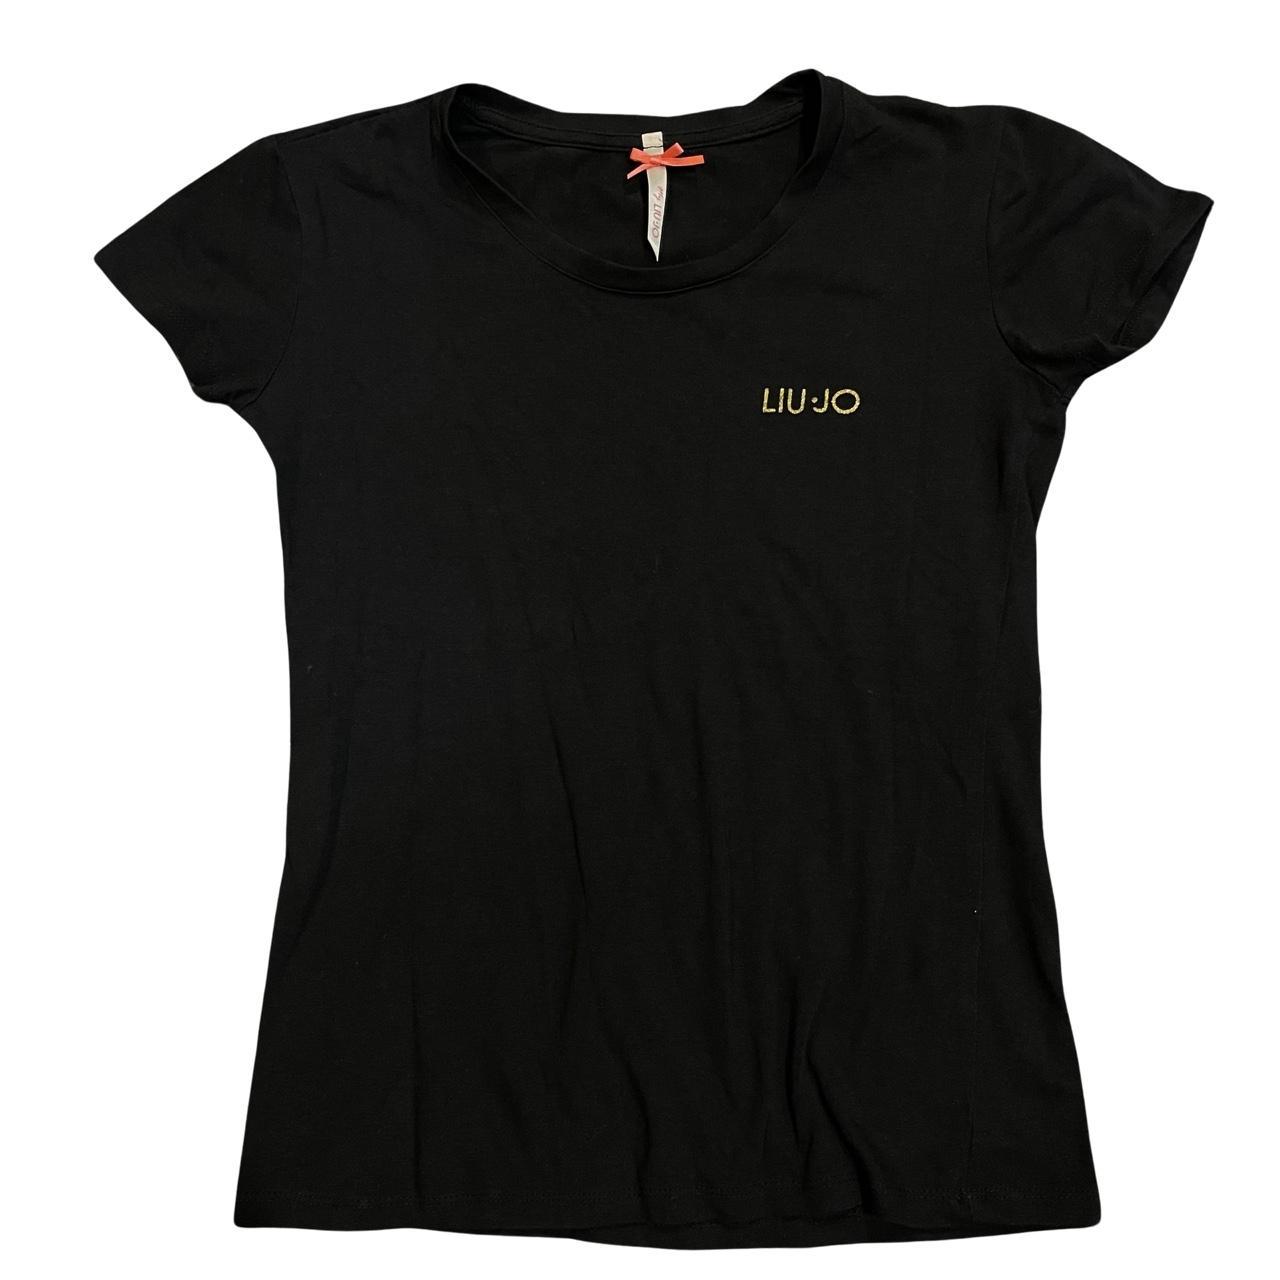 Liu Jo Women's Black and Gold T-shirt (6)